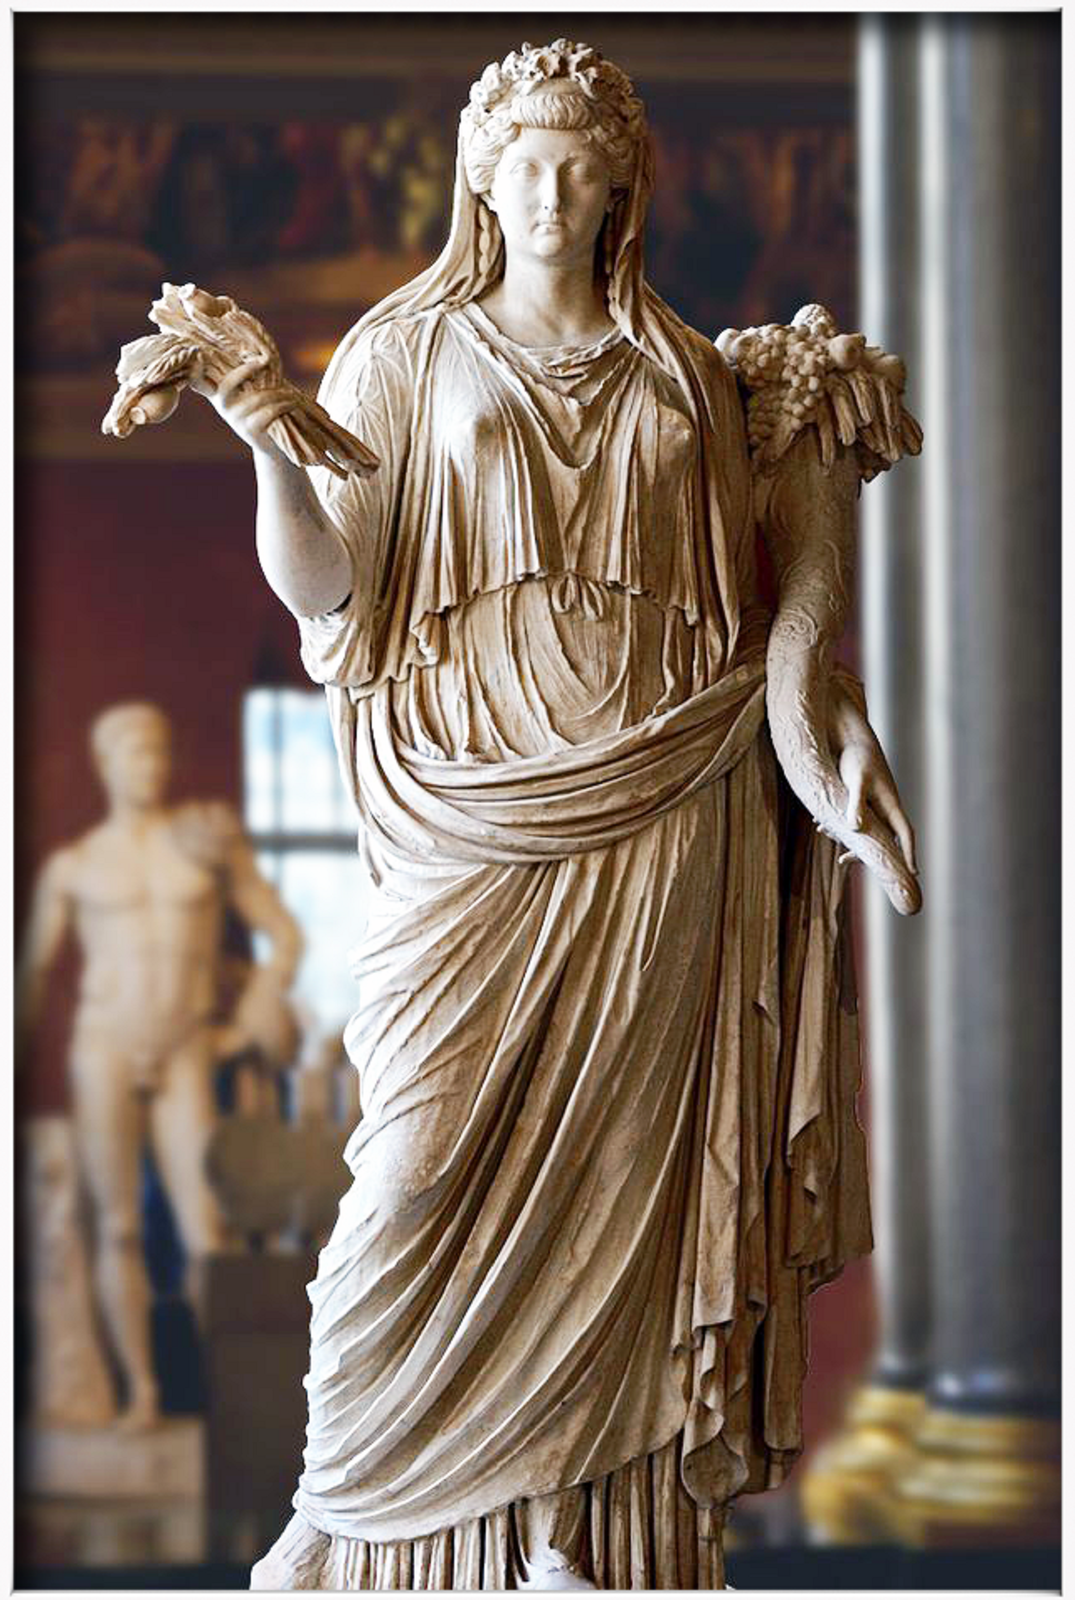 Ilustracja przedstawia rzeźbę „Bogini Demeter”. Rzeźba ukazuje kobietę w długiej szacie. Postać w lewej dłoni trzyma kłosy zbóż, w prawej zaś róg obfitości. Kobieta pewnie spogląda przed siebie.